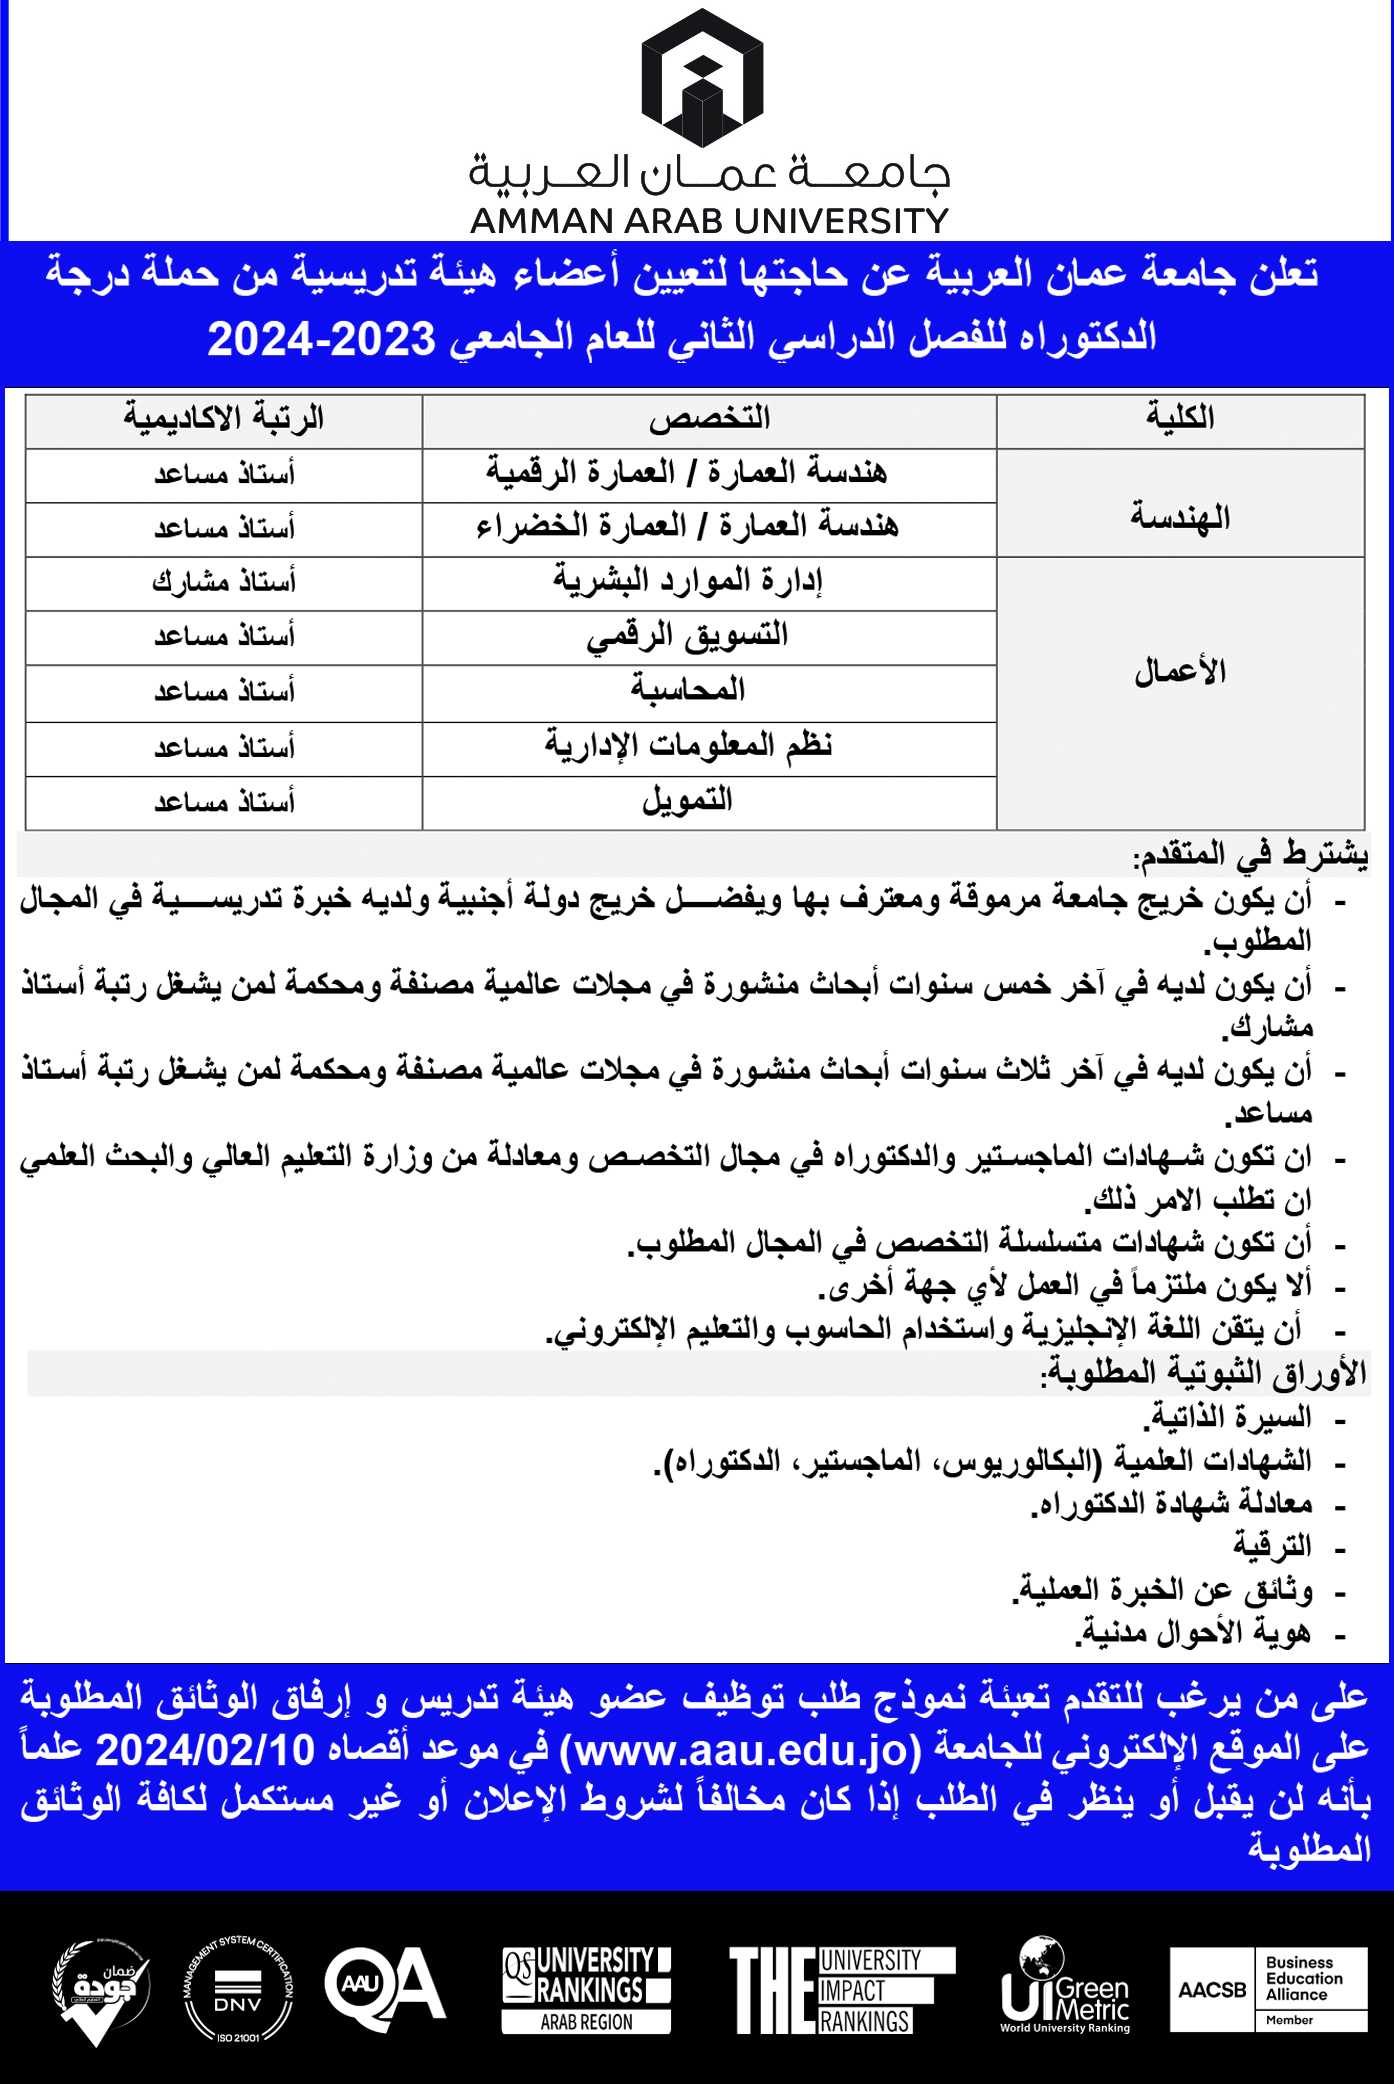 ​ تعلن جامعة عمان العربية عن حاجتها لتعيين أعضاء هيئة تدريسية من حملة درجة الدكتوراه للفصل الدراسي الثاني للعام الجامعي 2023-2024 [إضغط و إسحب للتحريك] ​